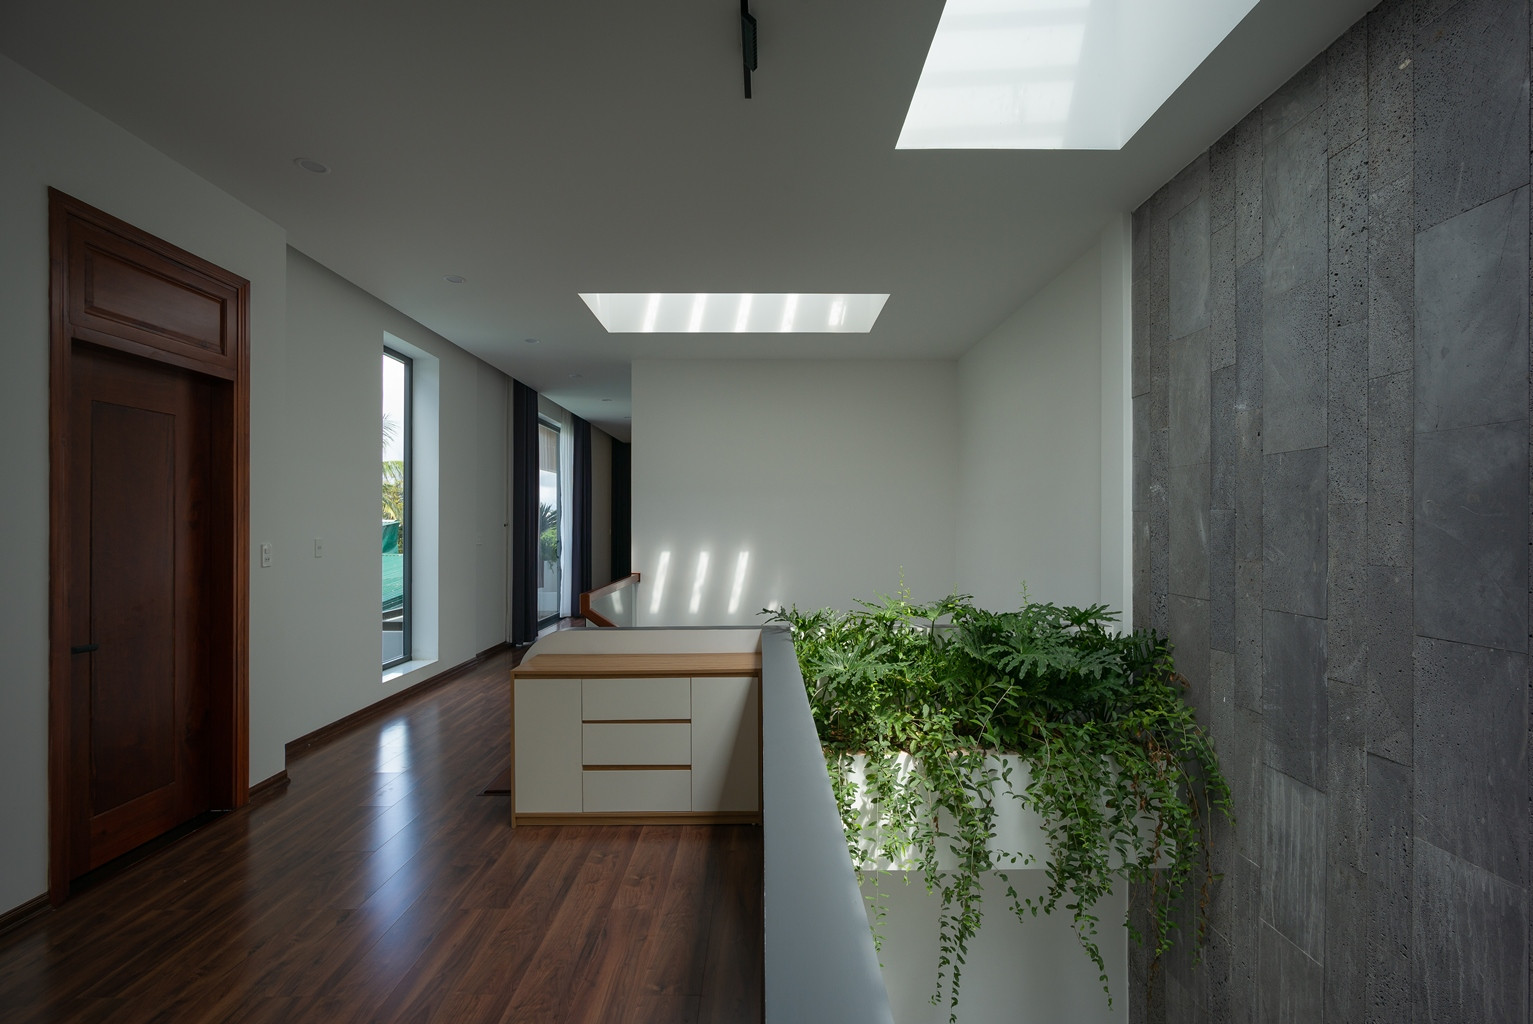 Giếng trời và cây xanh được bố trí ở các góc trong nhà để phòng nào cũng lấy sáng tự nhiên, giúp điều hòa không khí. 